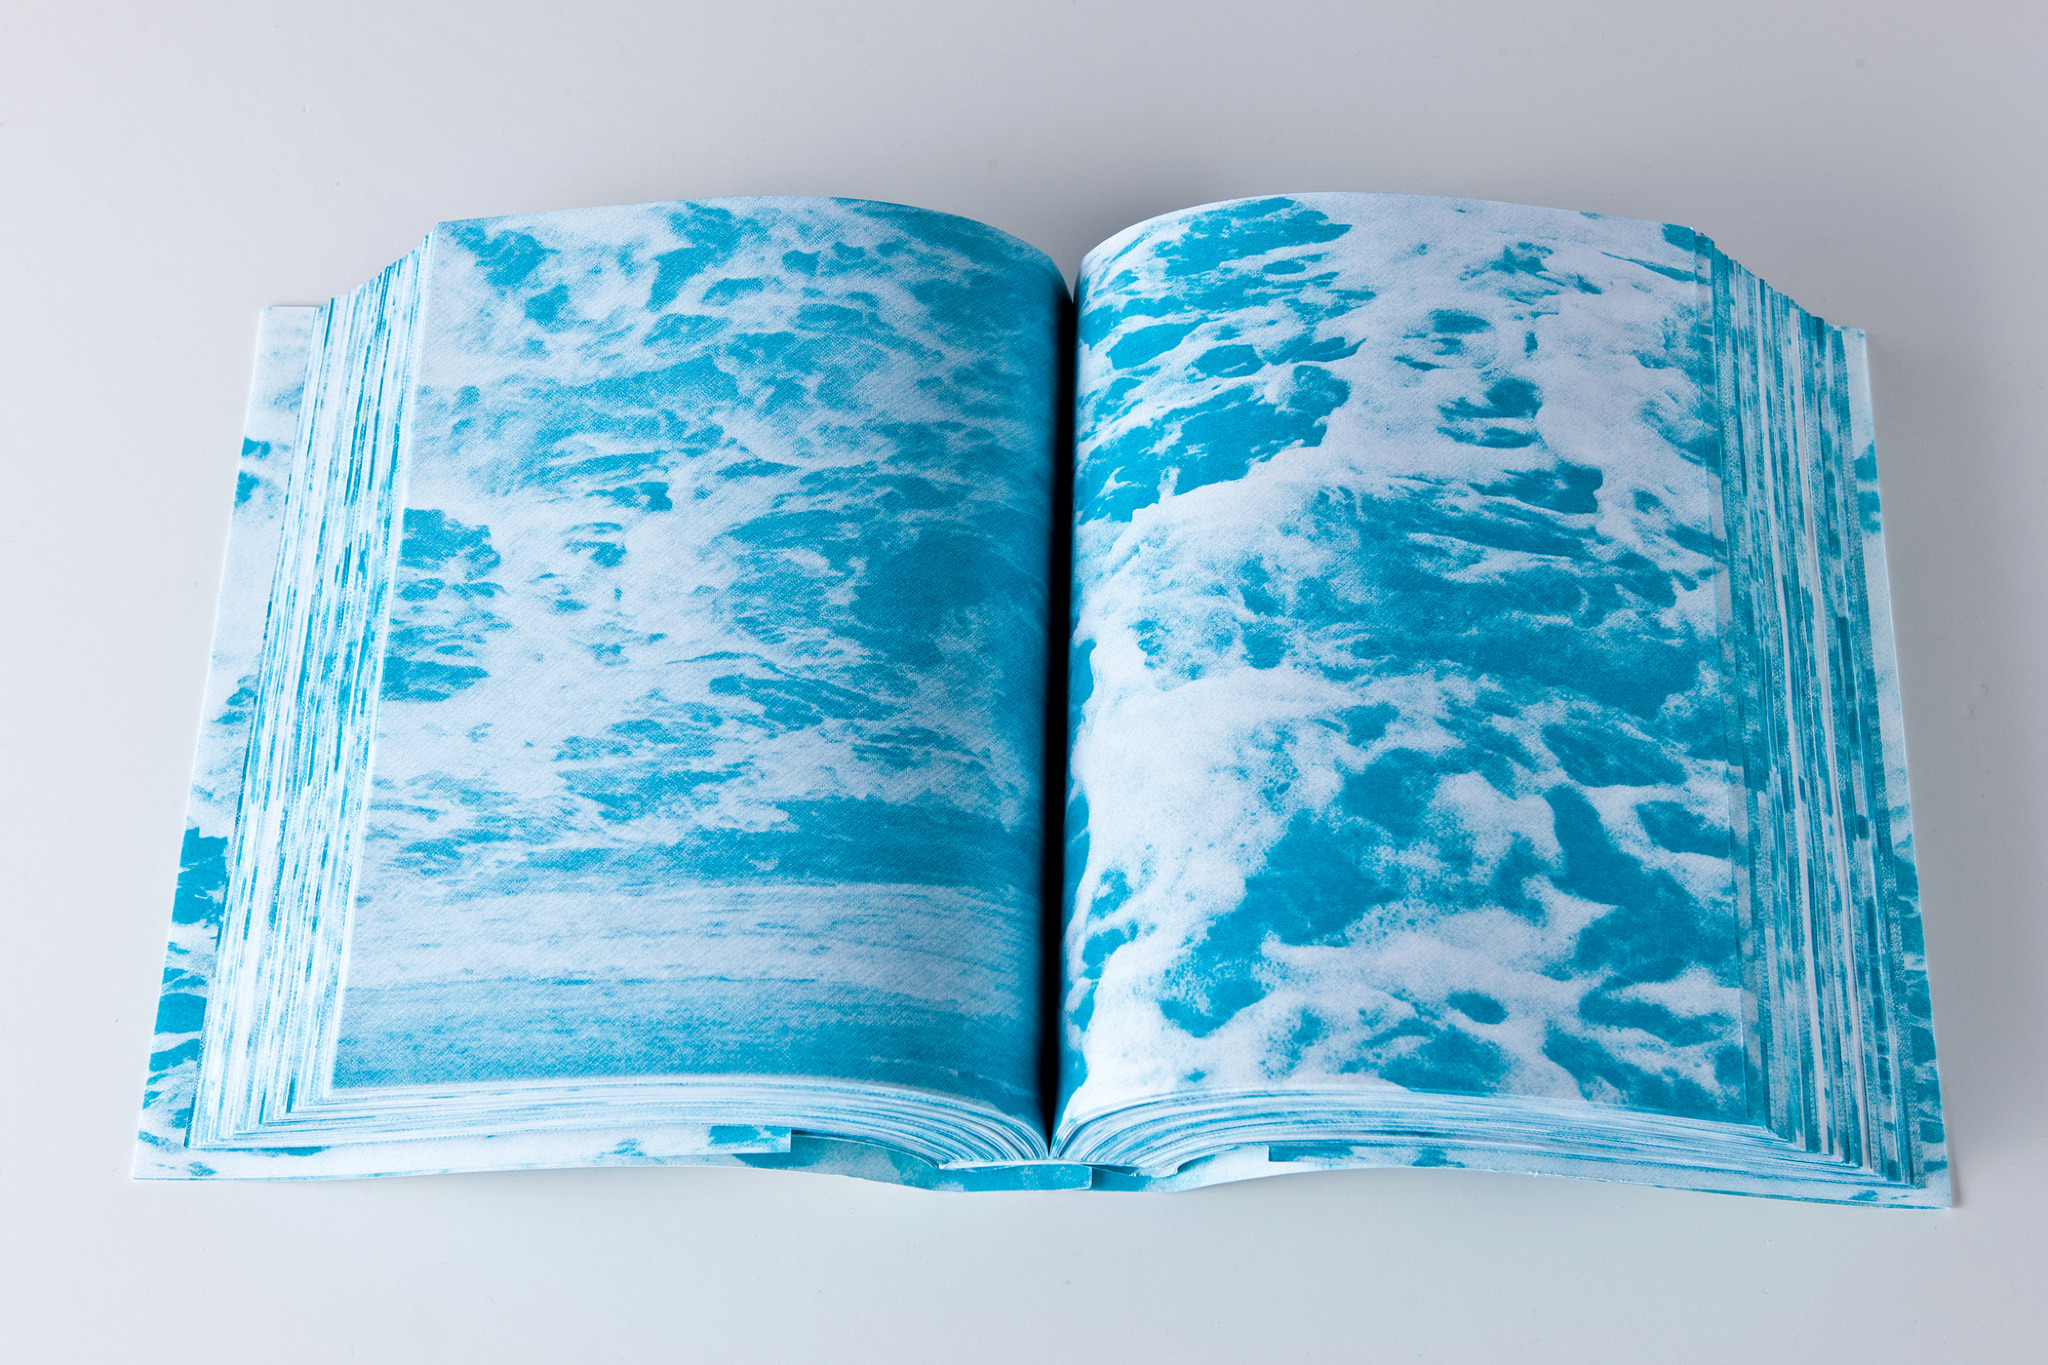 Be water book. Книга синяя вода. Как сделать фото книги в воде.